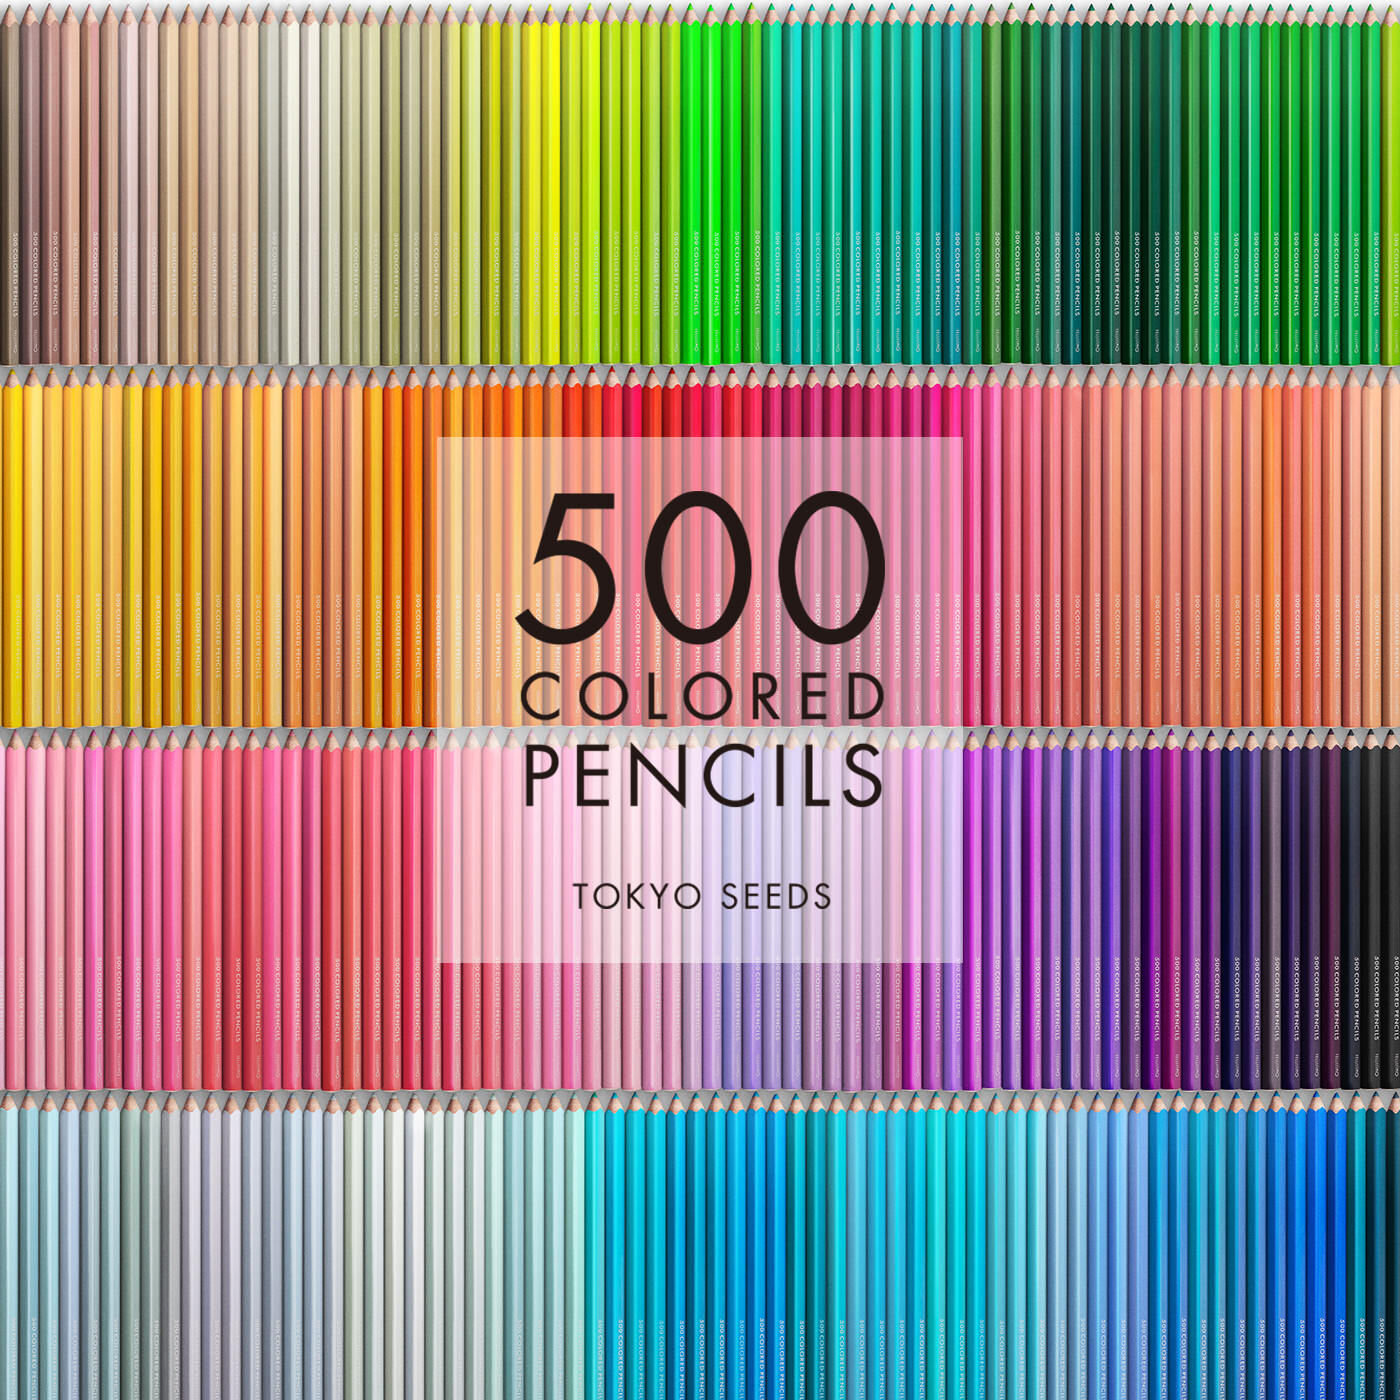 Real Stock|【415/500 MISO PEAS】500色の色えんぴつ TOKYO SEEDS|1992年、世界初の「500色」という膨大な色数の色えんぴつが誕生して以来、その販売数は発売当初から合わせると、世界55ヵ国10万セット以上。今回、メイド・イン・ジャパンにこだわり、すべてが新しく生まれ変わって登場しました。